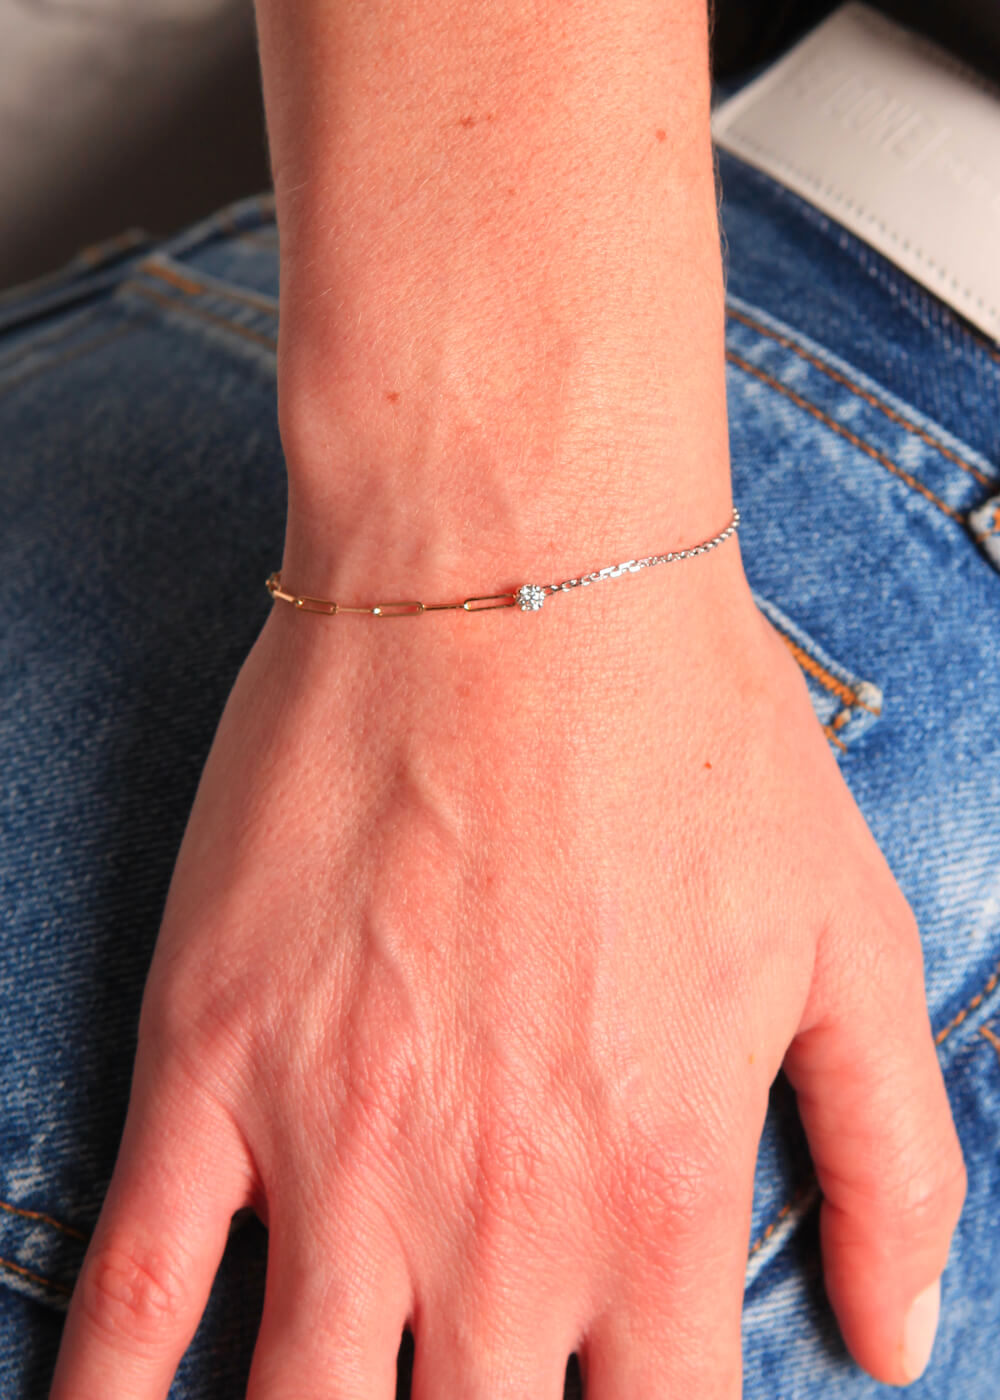 Solitaire Rond 18k gold diamond bracelet